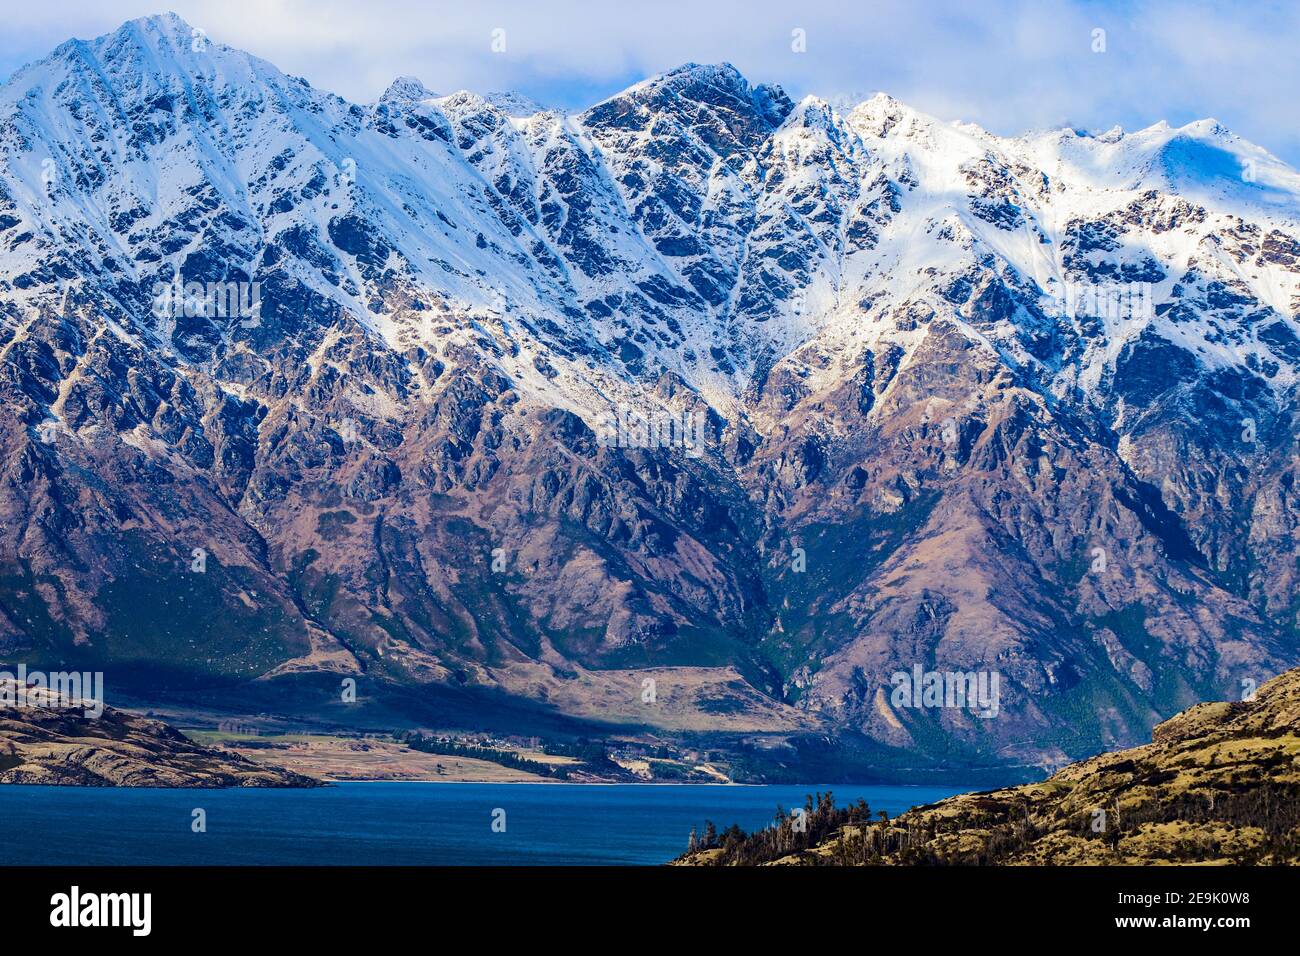 Belle vue sur les montagnes enneigées près du lac de Queenstown, Nouvelle-Zélande Banque D'Images